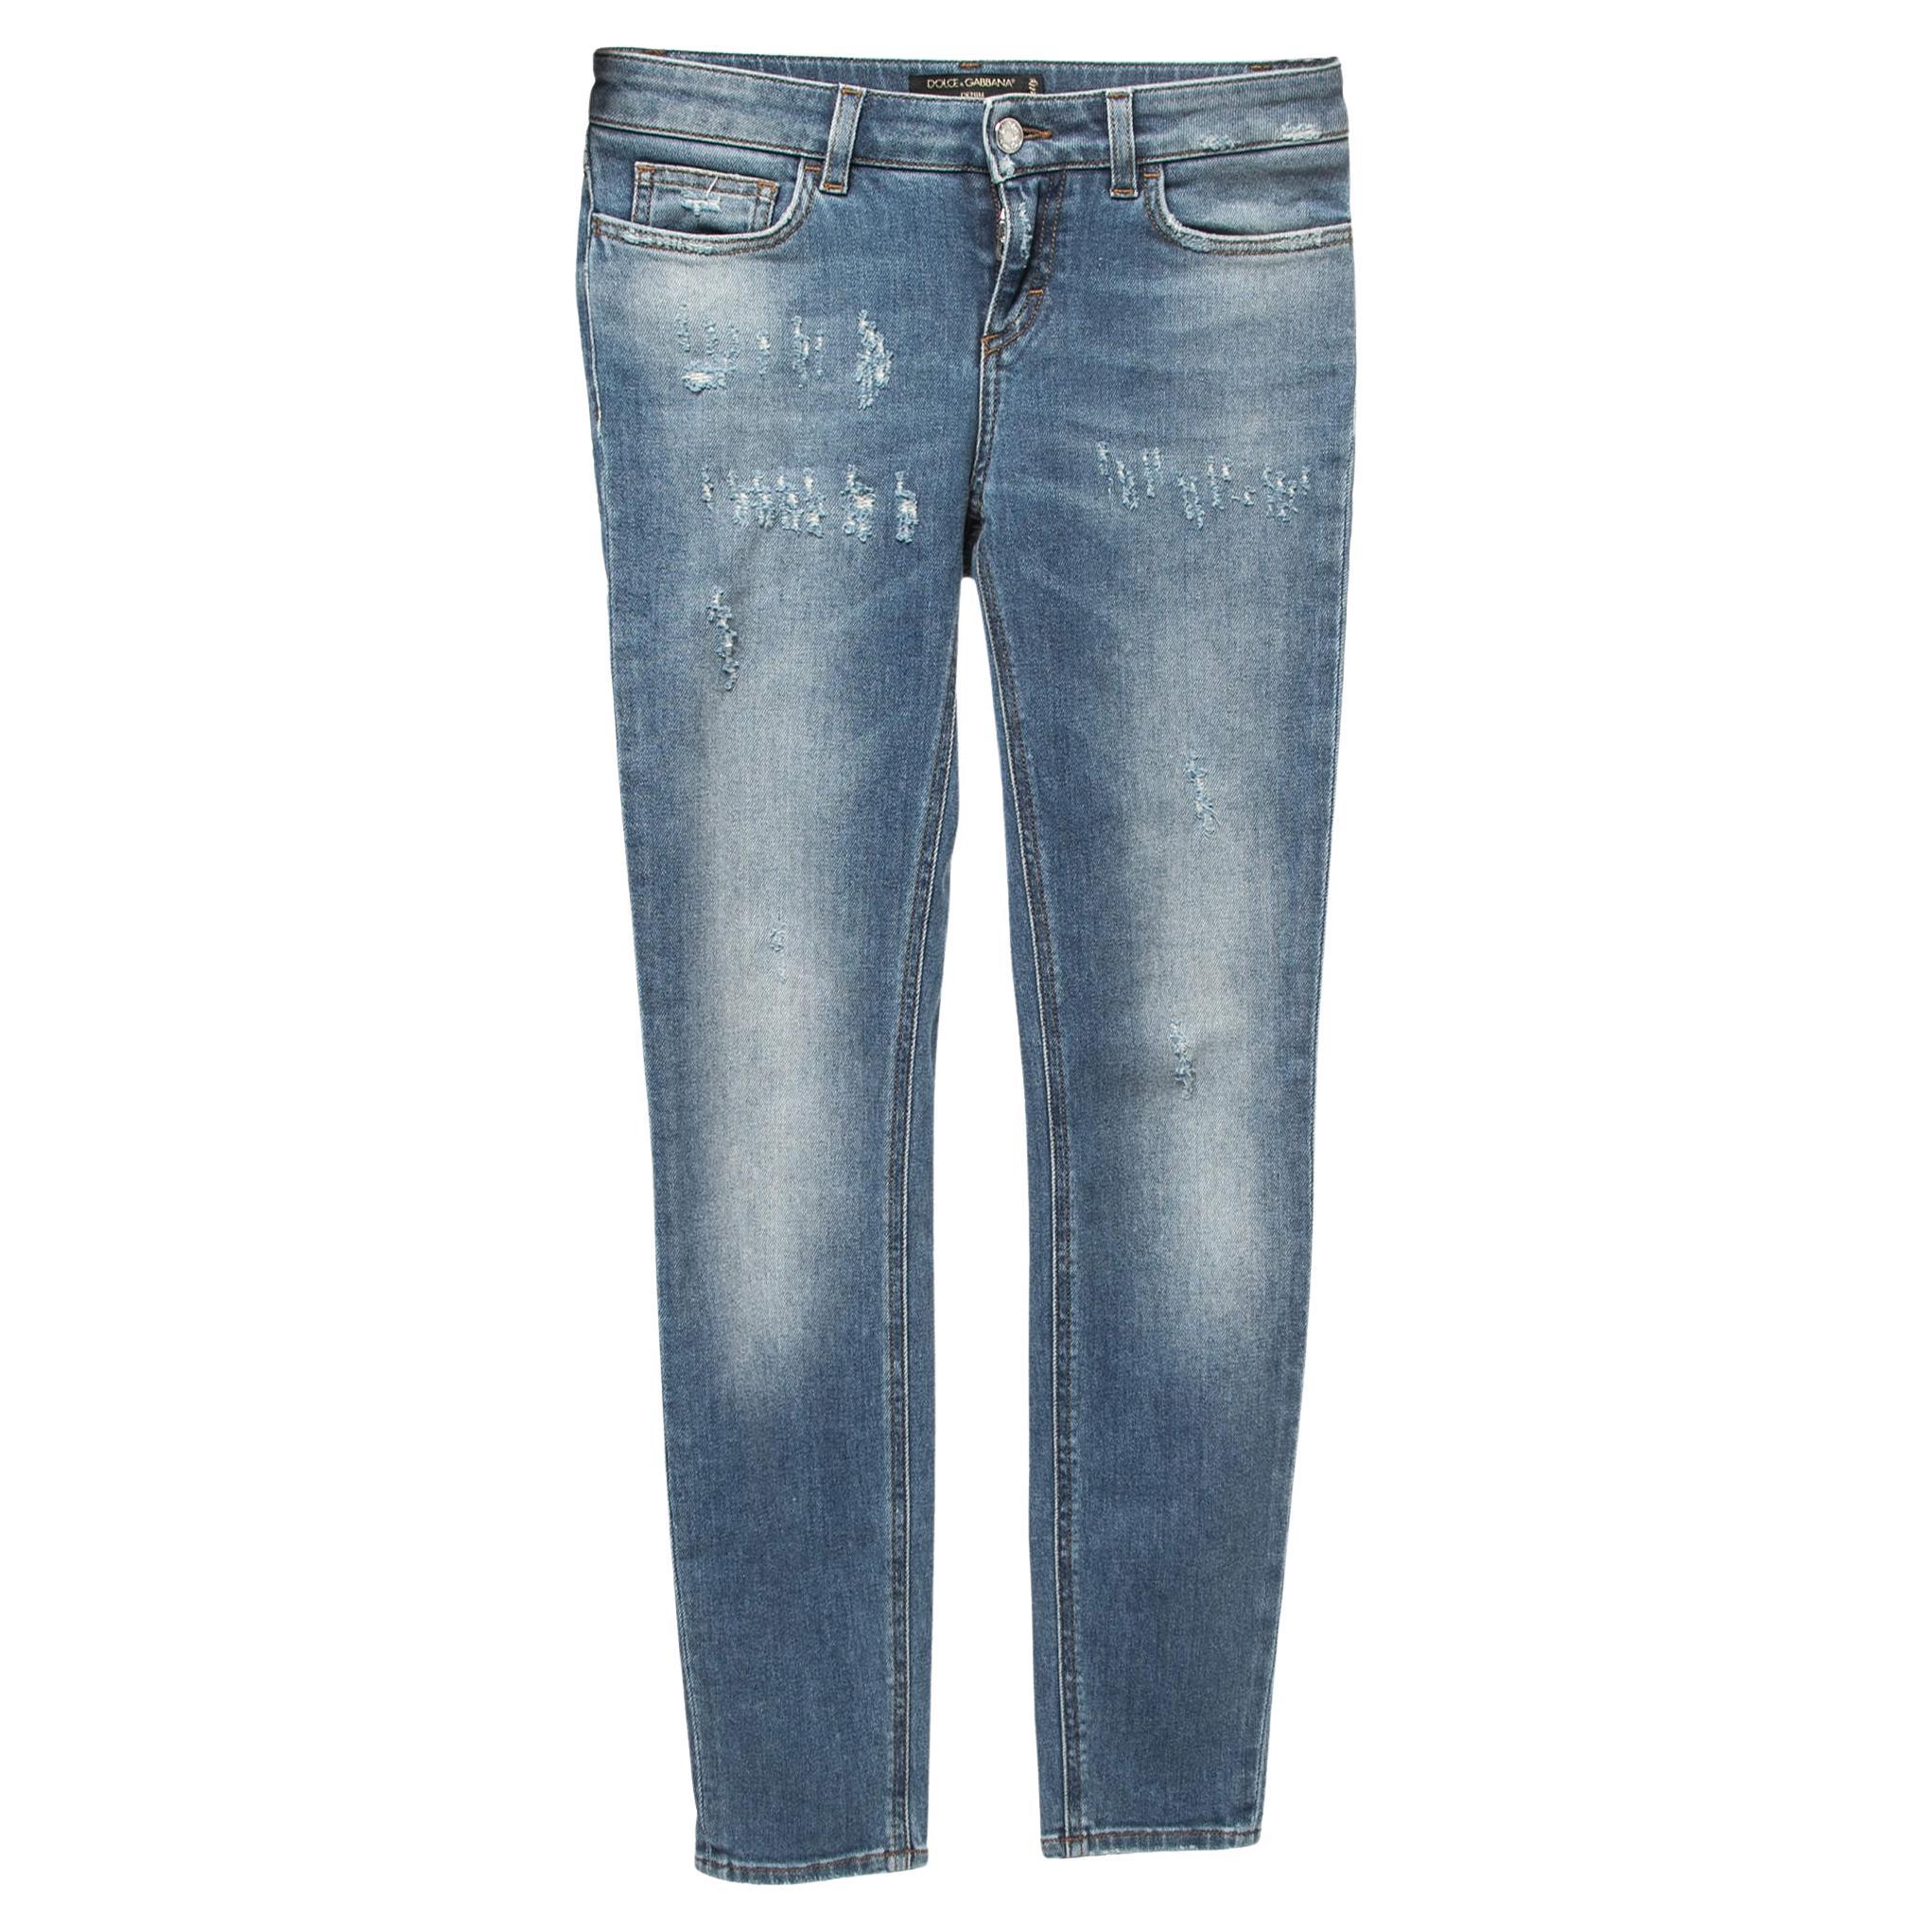 Dolce & Gabbana Blue Distressed Denim Pretty Skinny Jeans XS Waist 26" For Sale